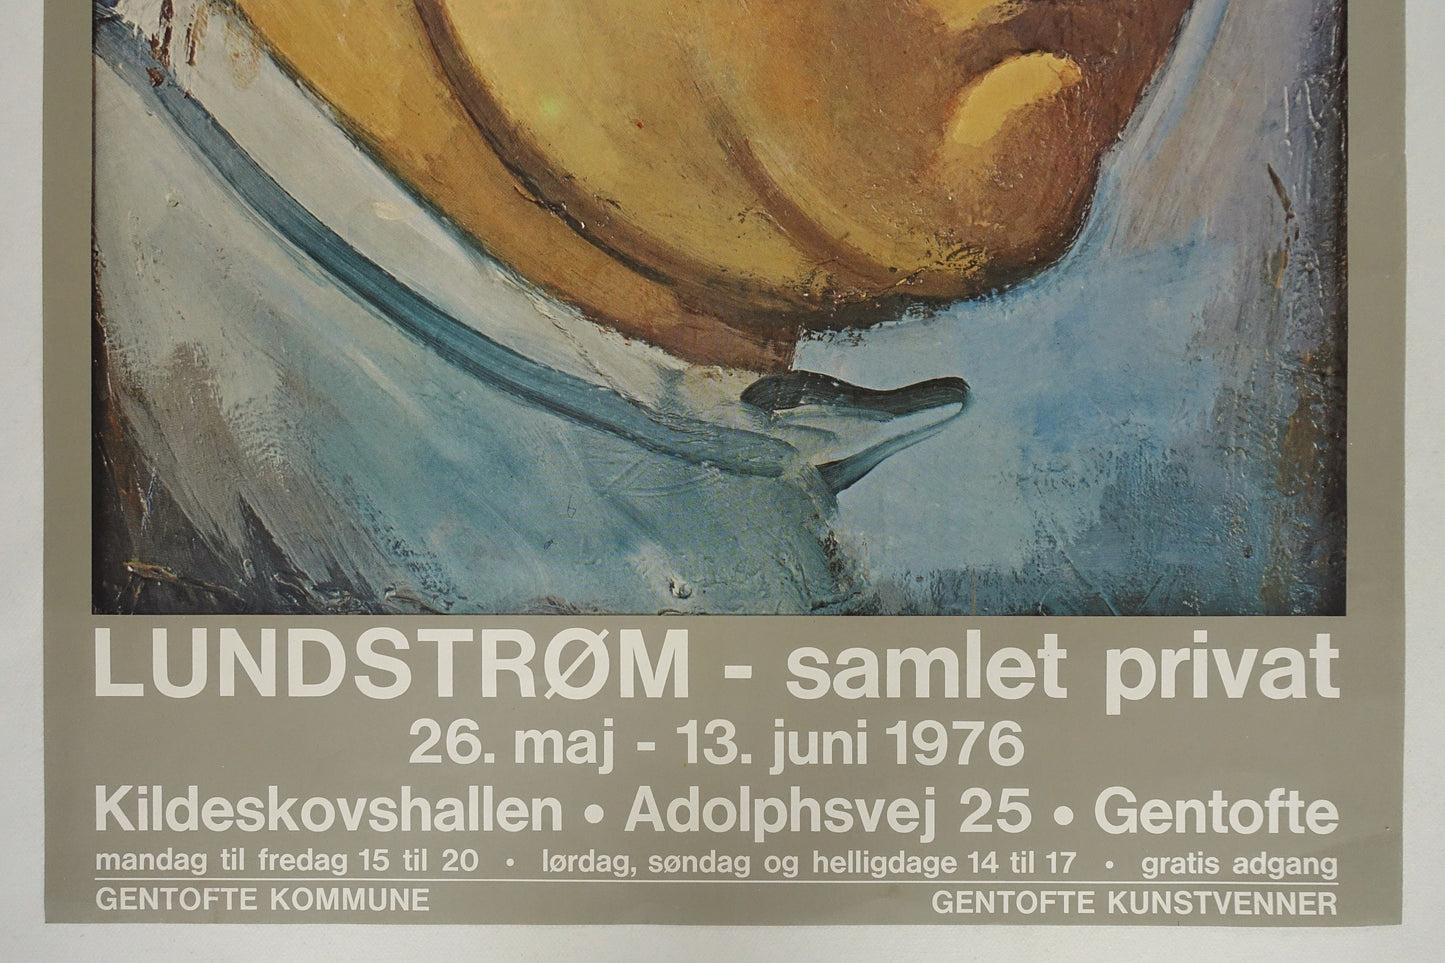 1976 Lundstrøm Art Exhibition Poster - Original Vintage Poster